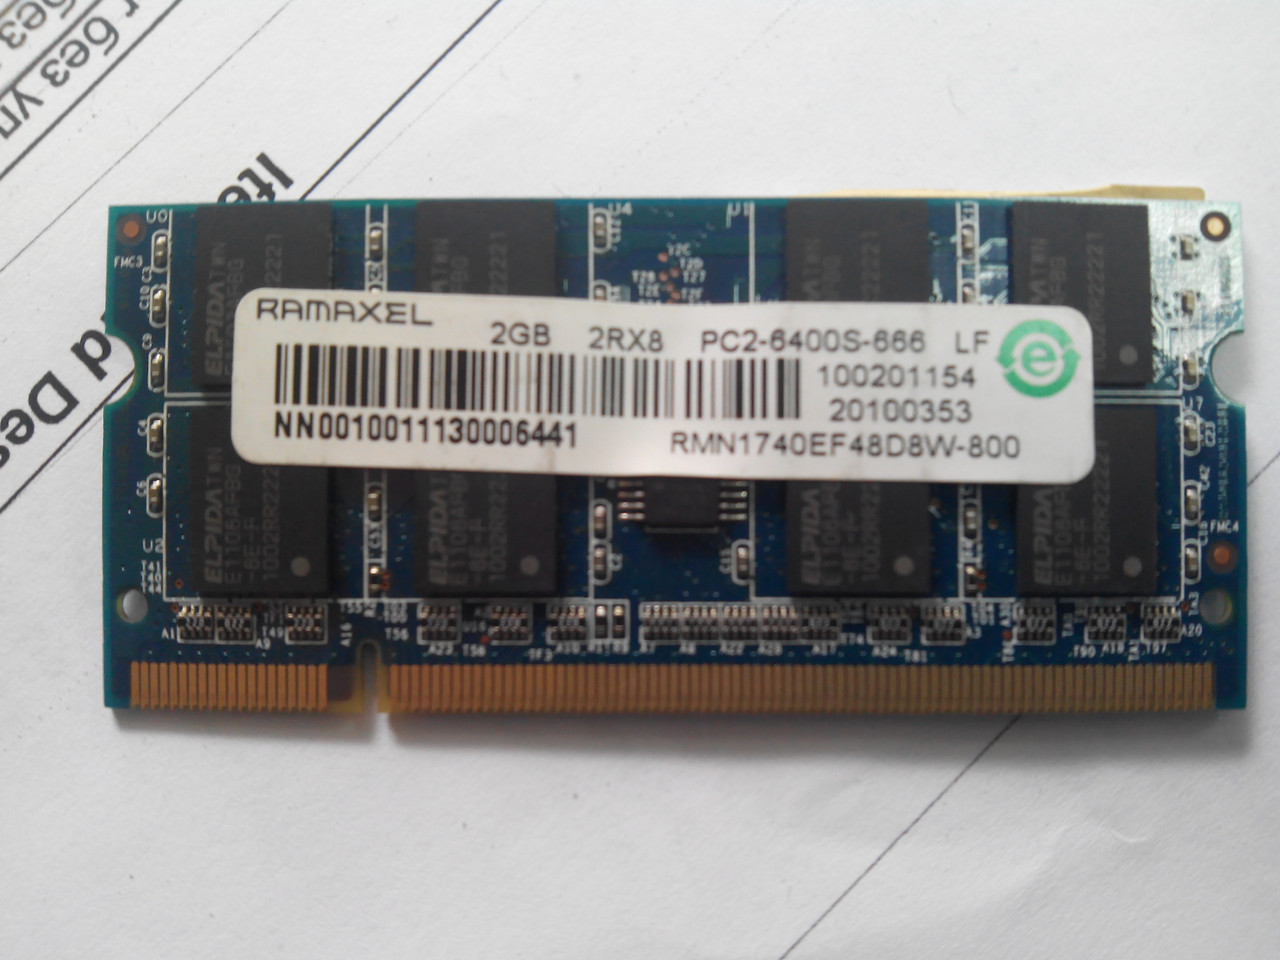 Пам'ять для ноутбука SO-DIMM DDR2 2GB 800Mhz